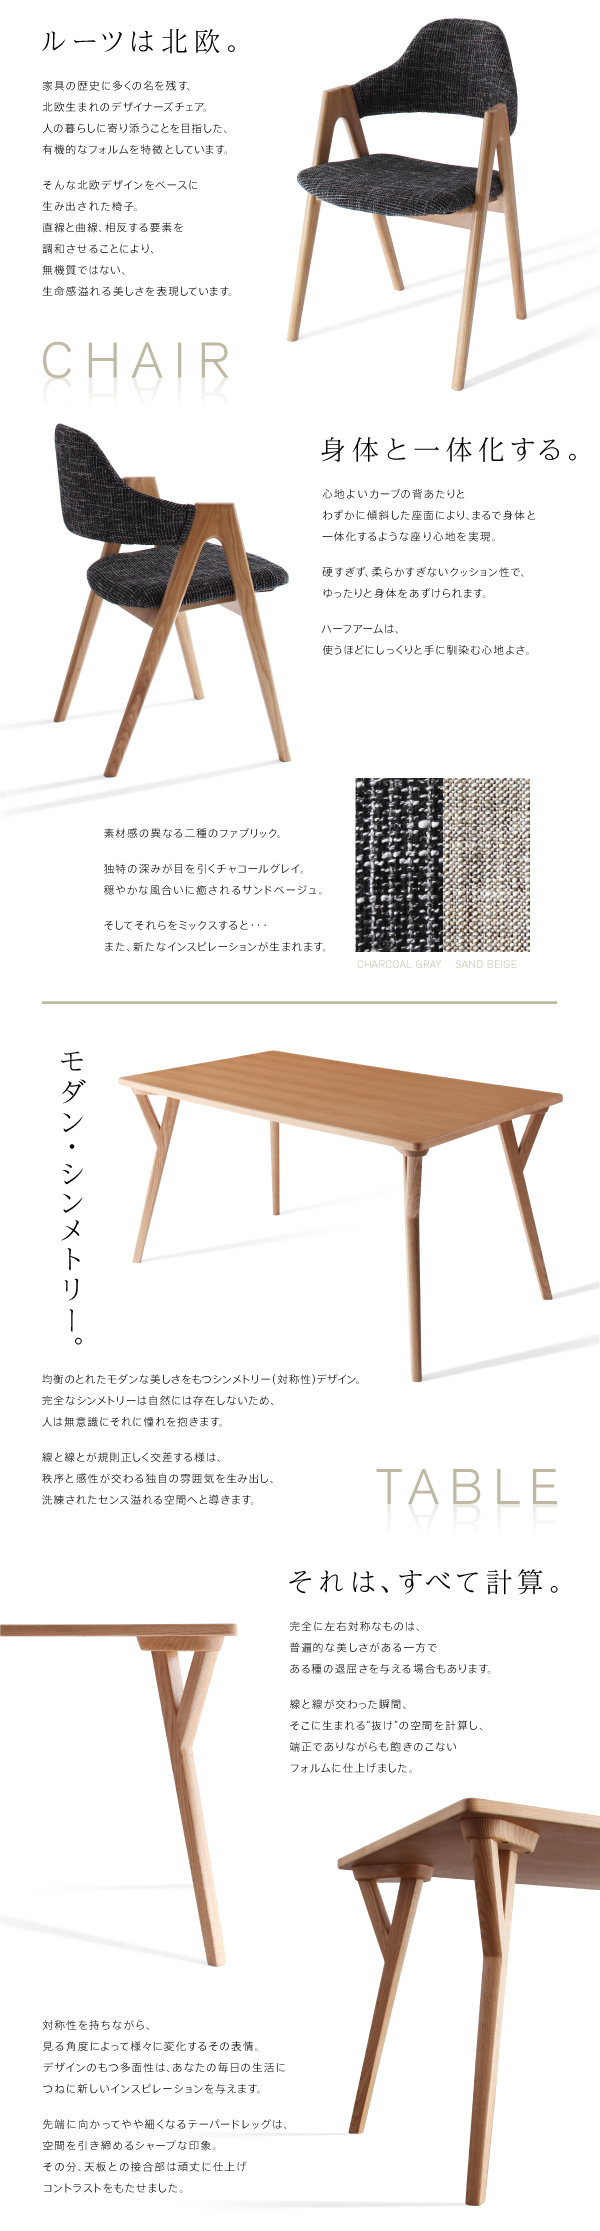 北欧モダンデザインのダイニングテーブルと椅子